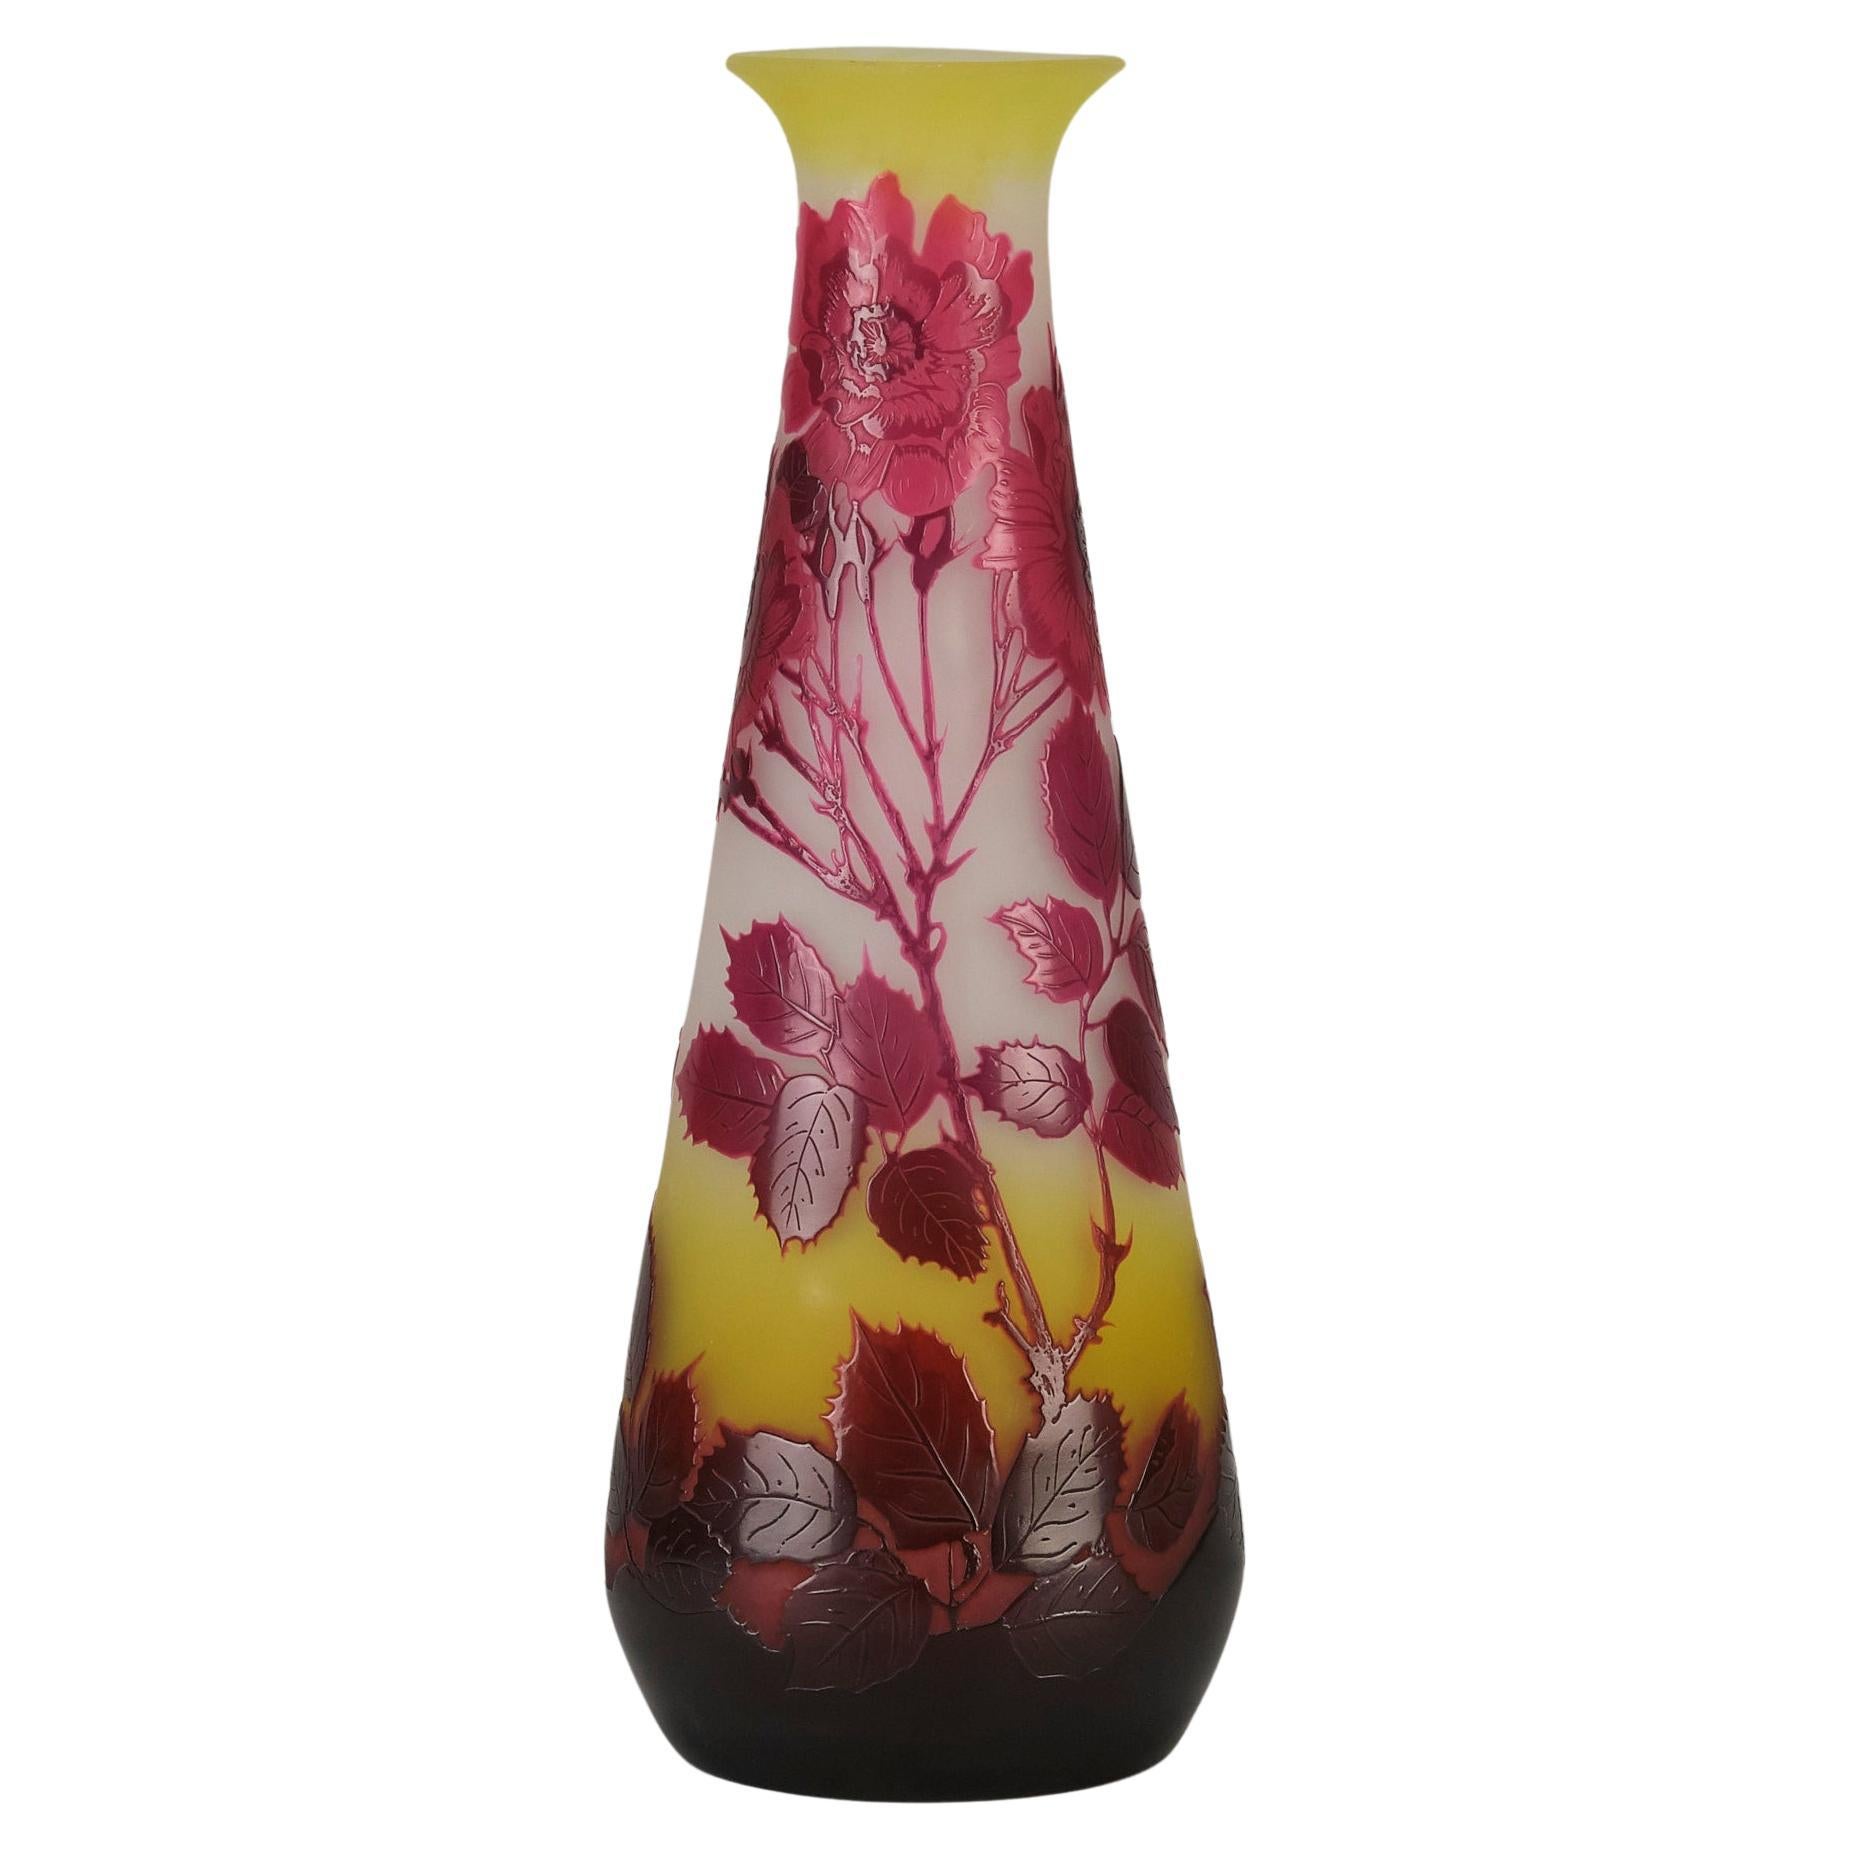 Kamee-Glasvase mit dem Titel "Wildrosen-Vase" von Emile Gallé aus dem frühen 20.